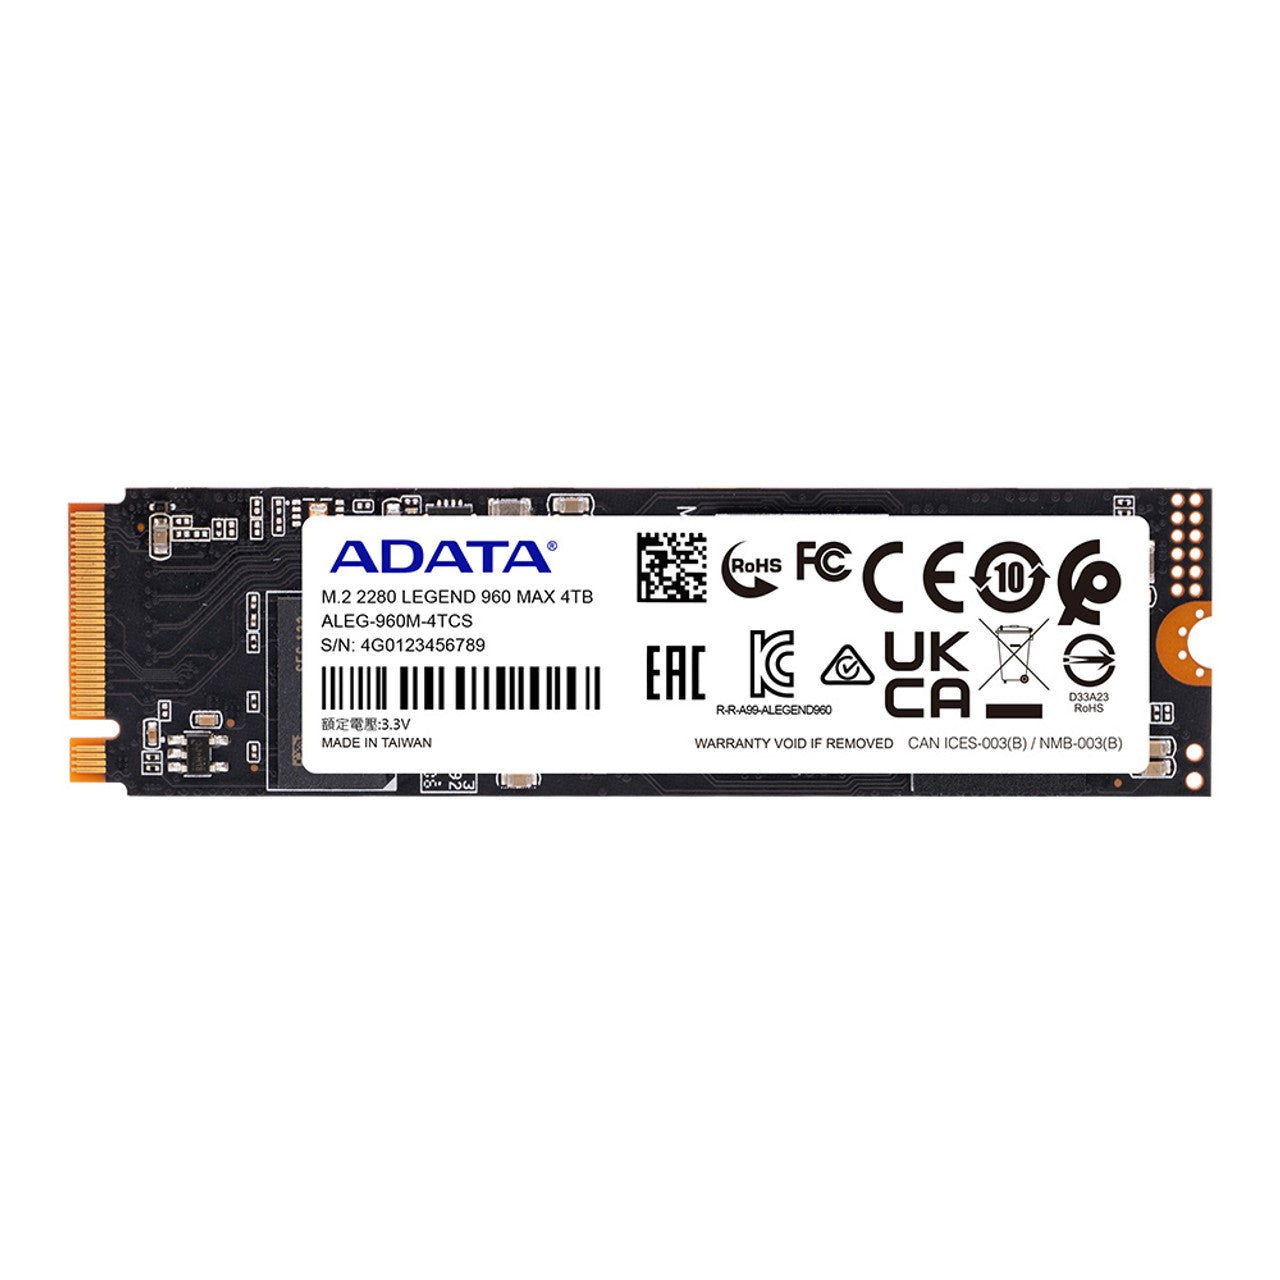 ADATA LEGEND 960 MAX SSD NVMe Gen4 with Heatsink